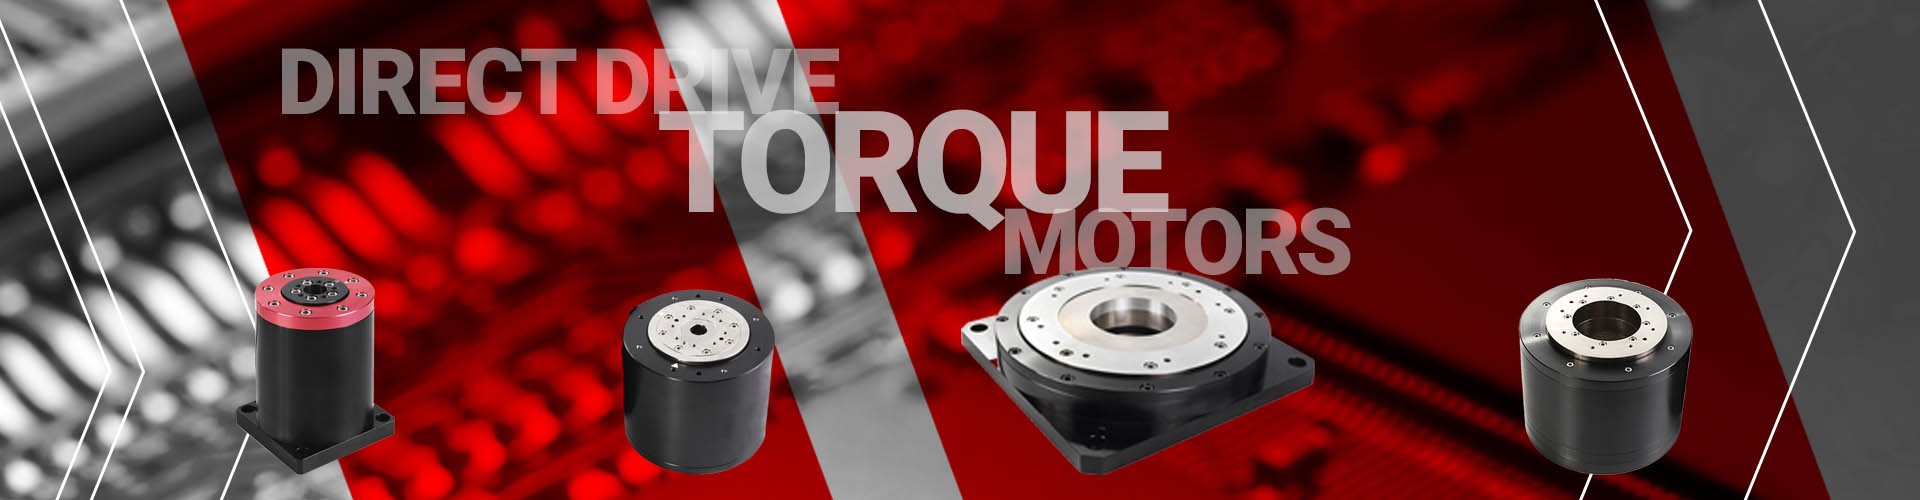 torque-motors-banner